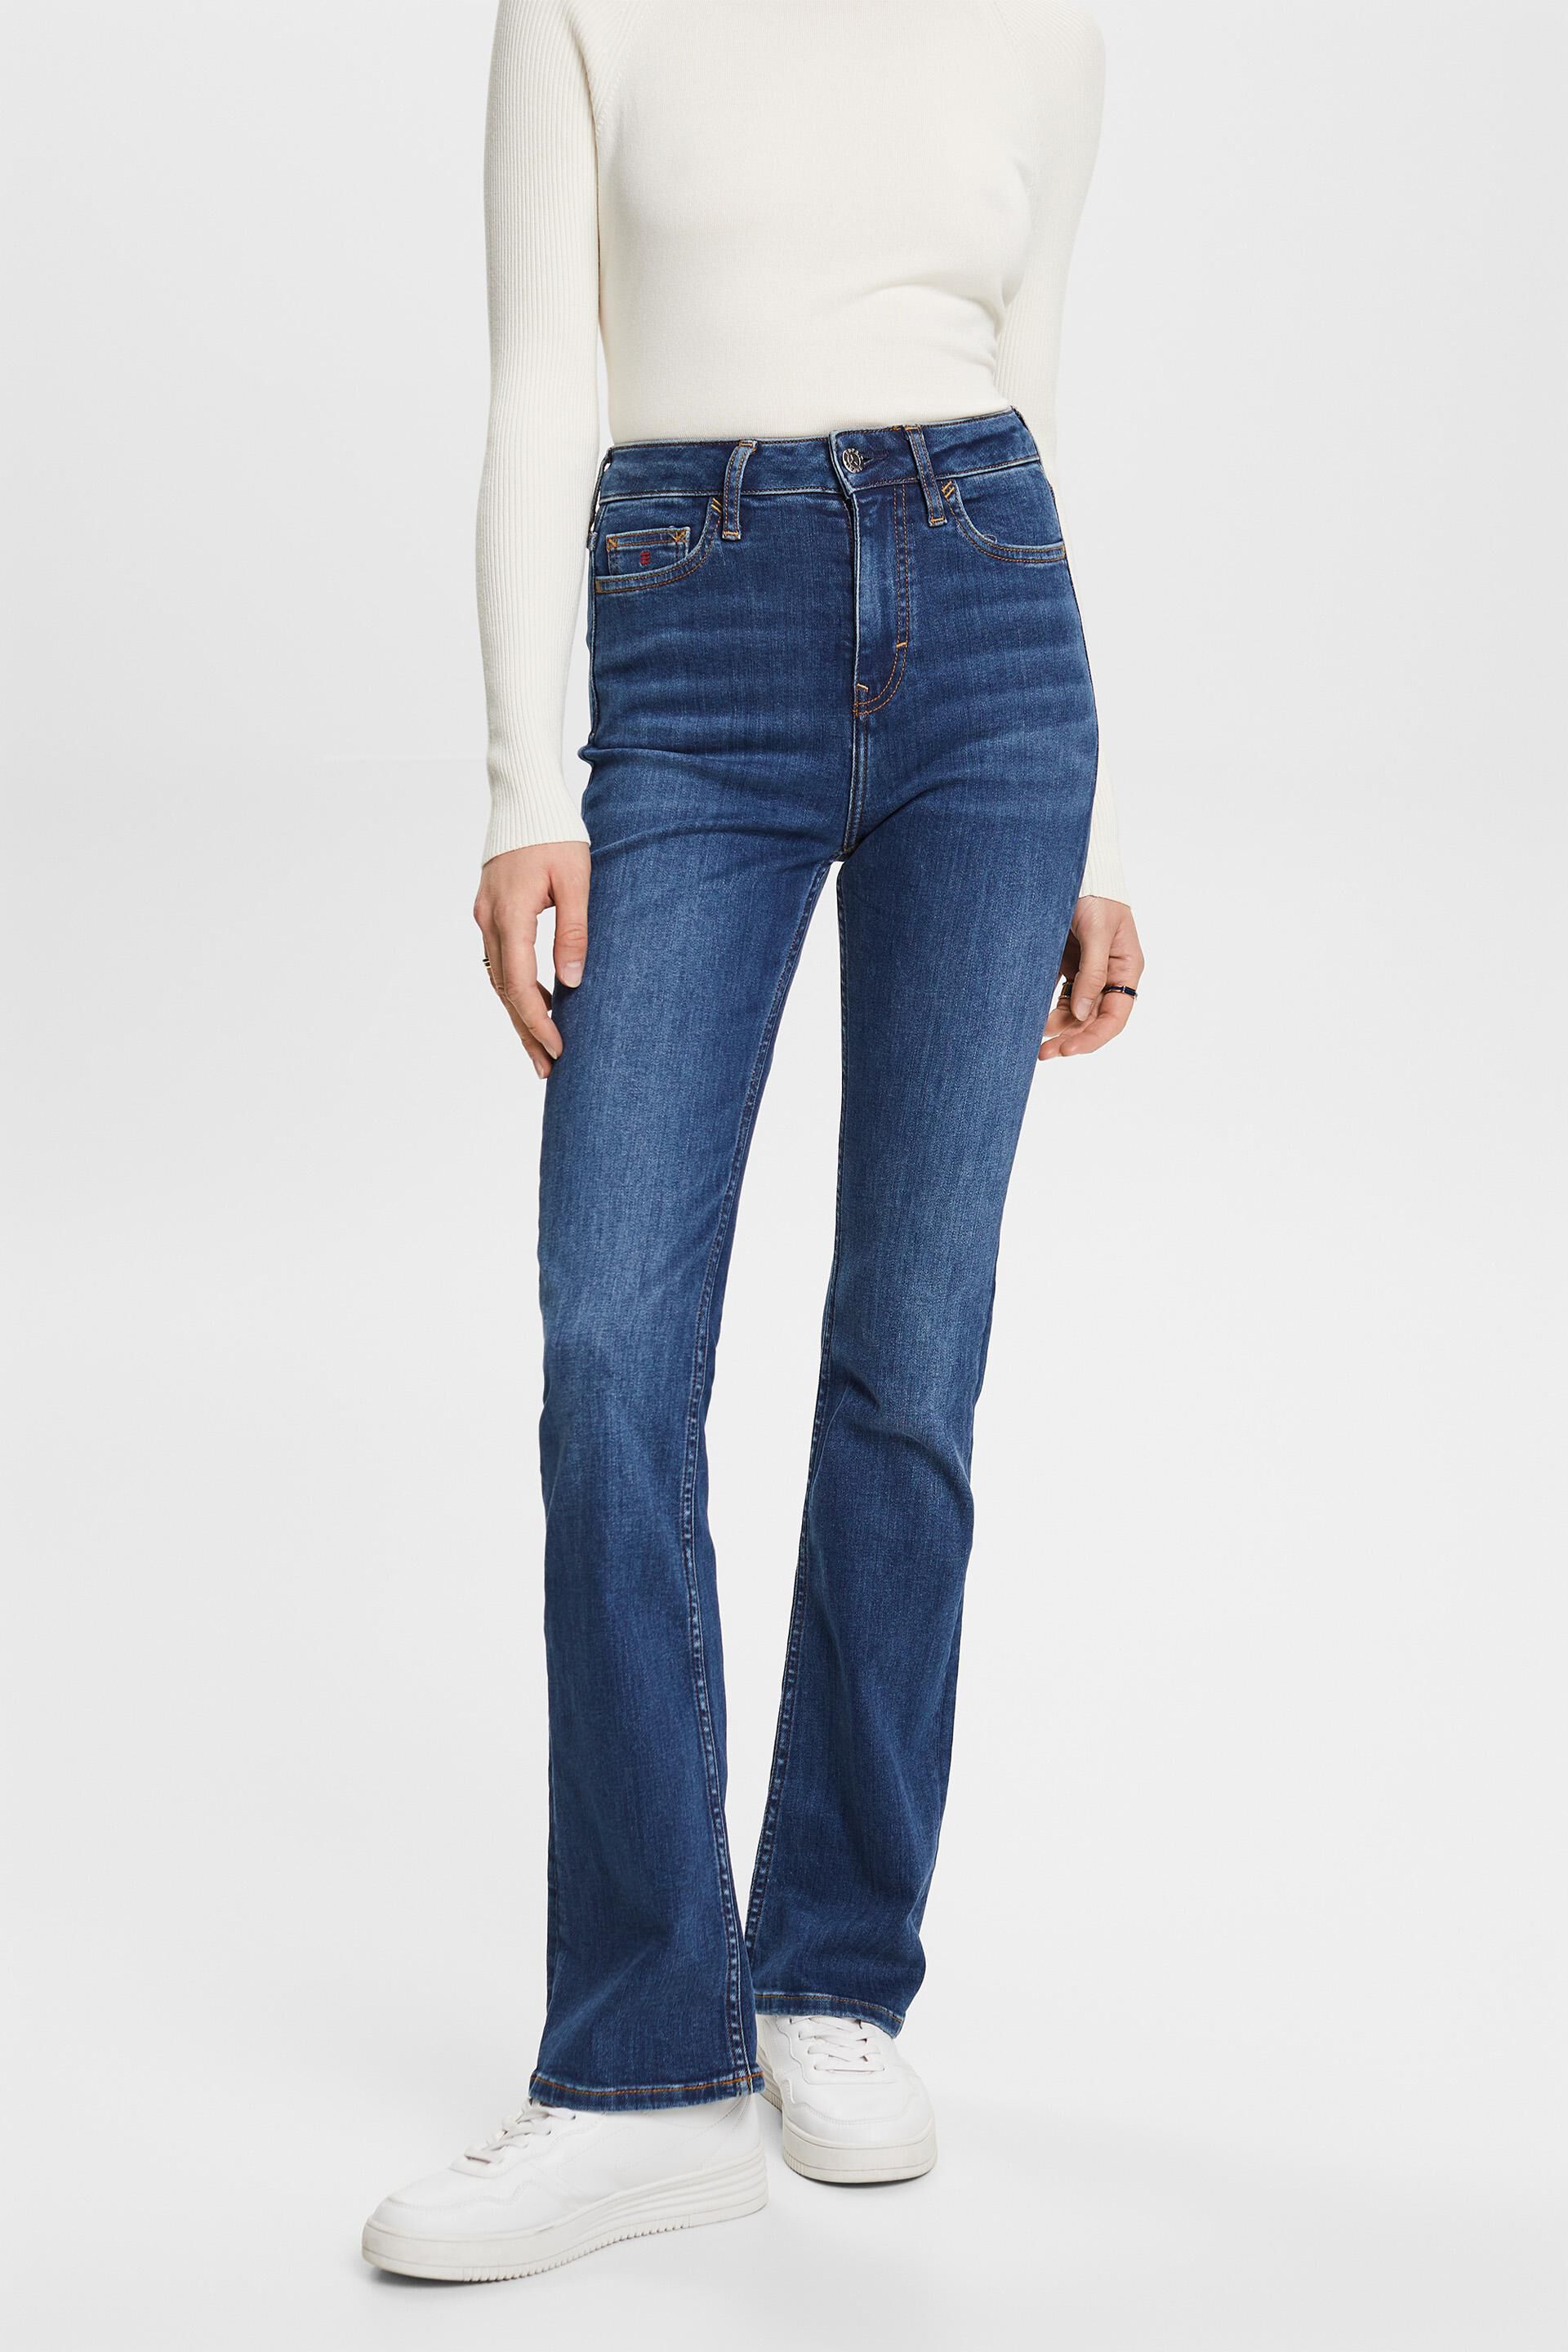 Esprit Damen Hochwertige Bootcut-Jeans mit hohem Bund